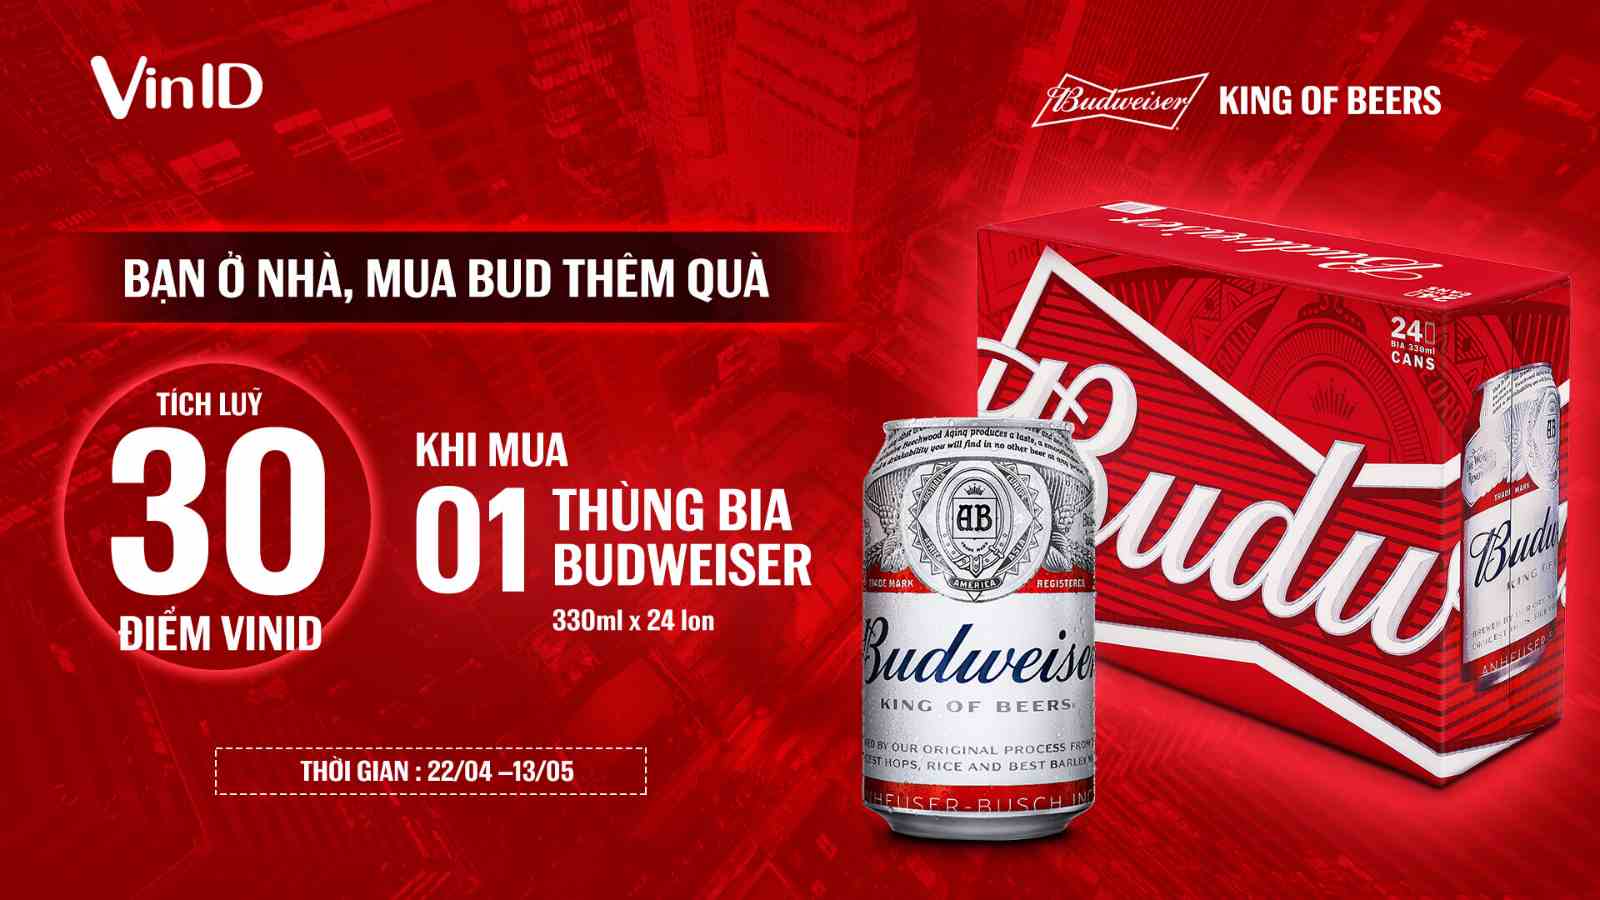 Thể lệ chương trình ưu đãi tháng 5 khi mua sản phẩm thương hiệu Budweiser